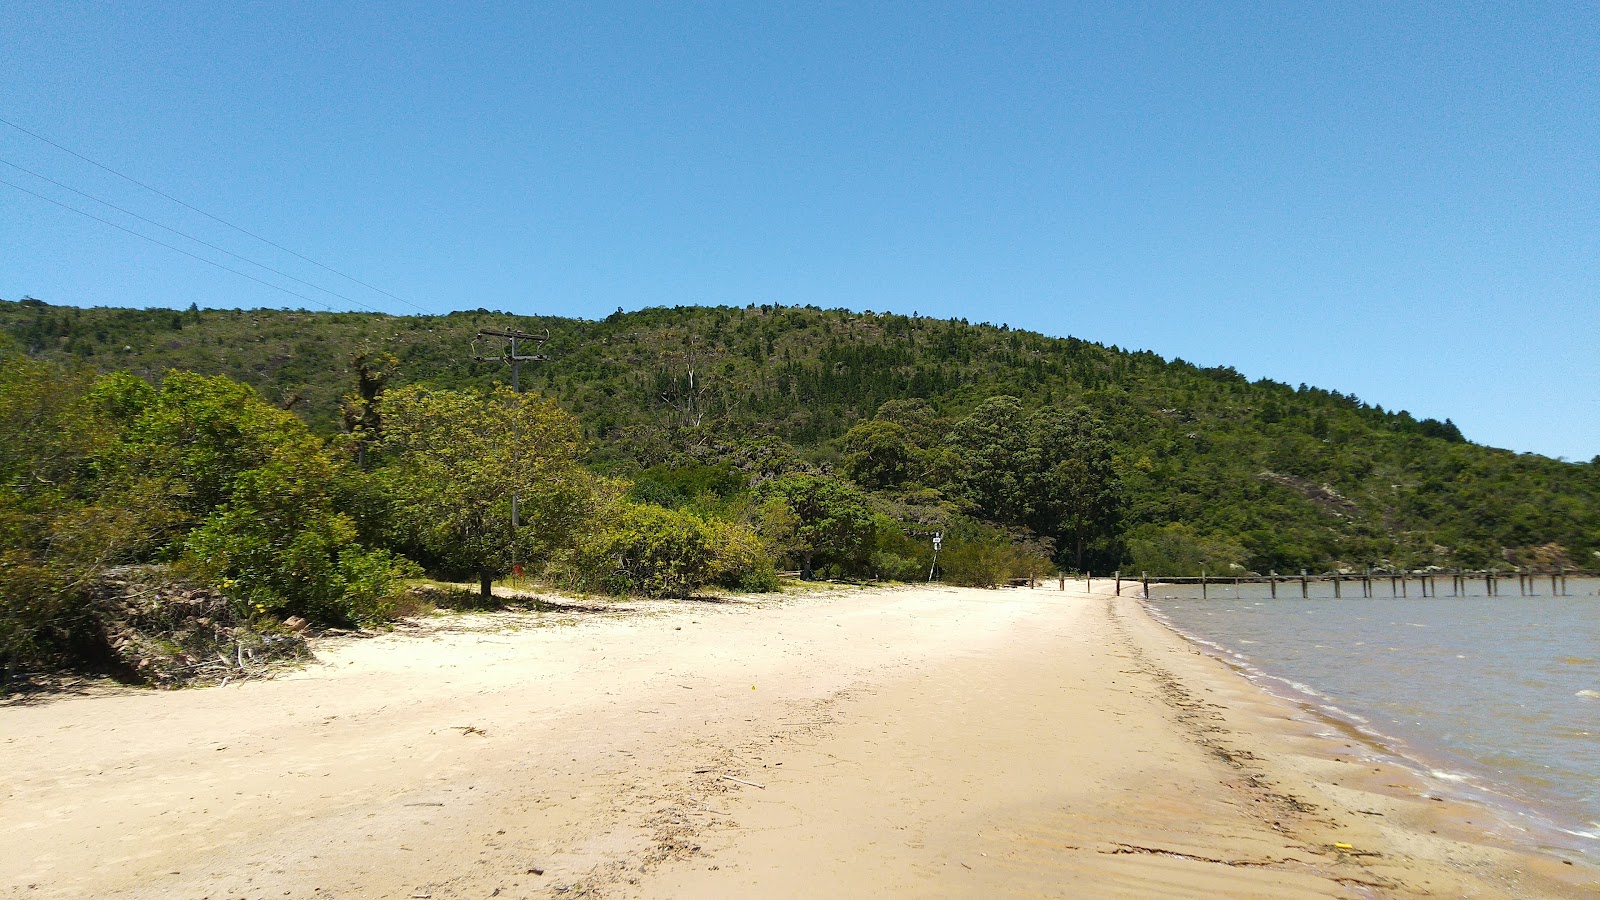 Fotografie cu Praia da Pedreira cu o suprafață de apa turcoaz